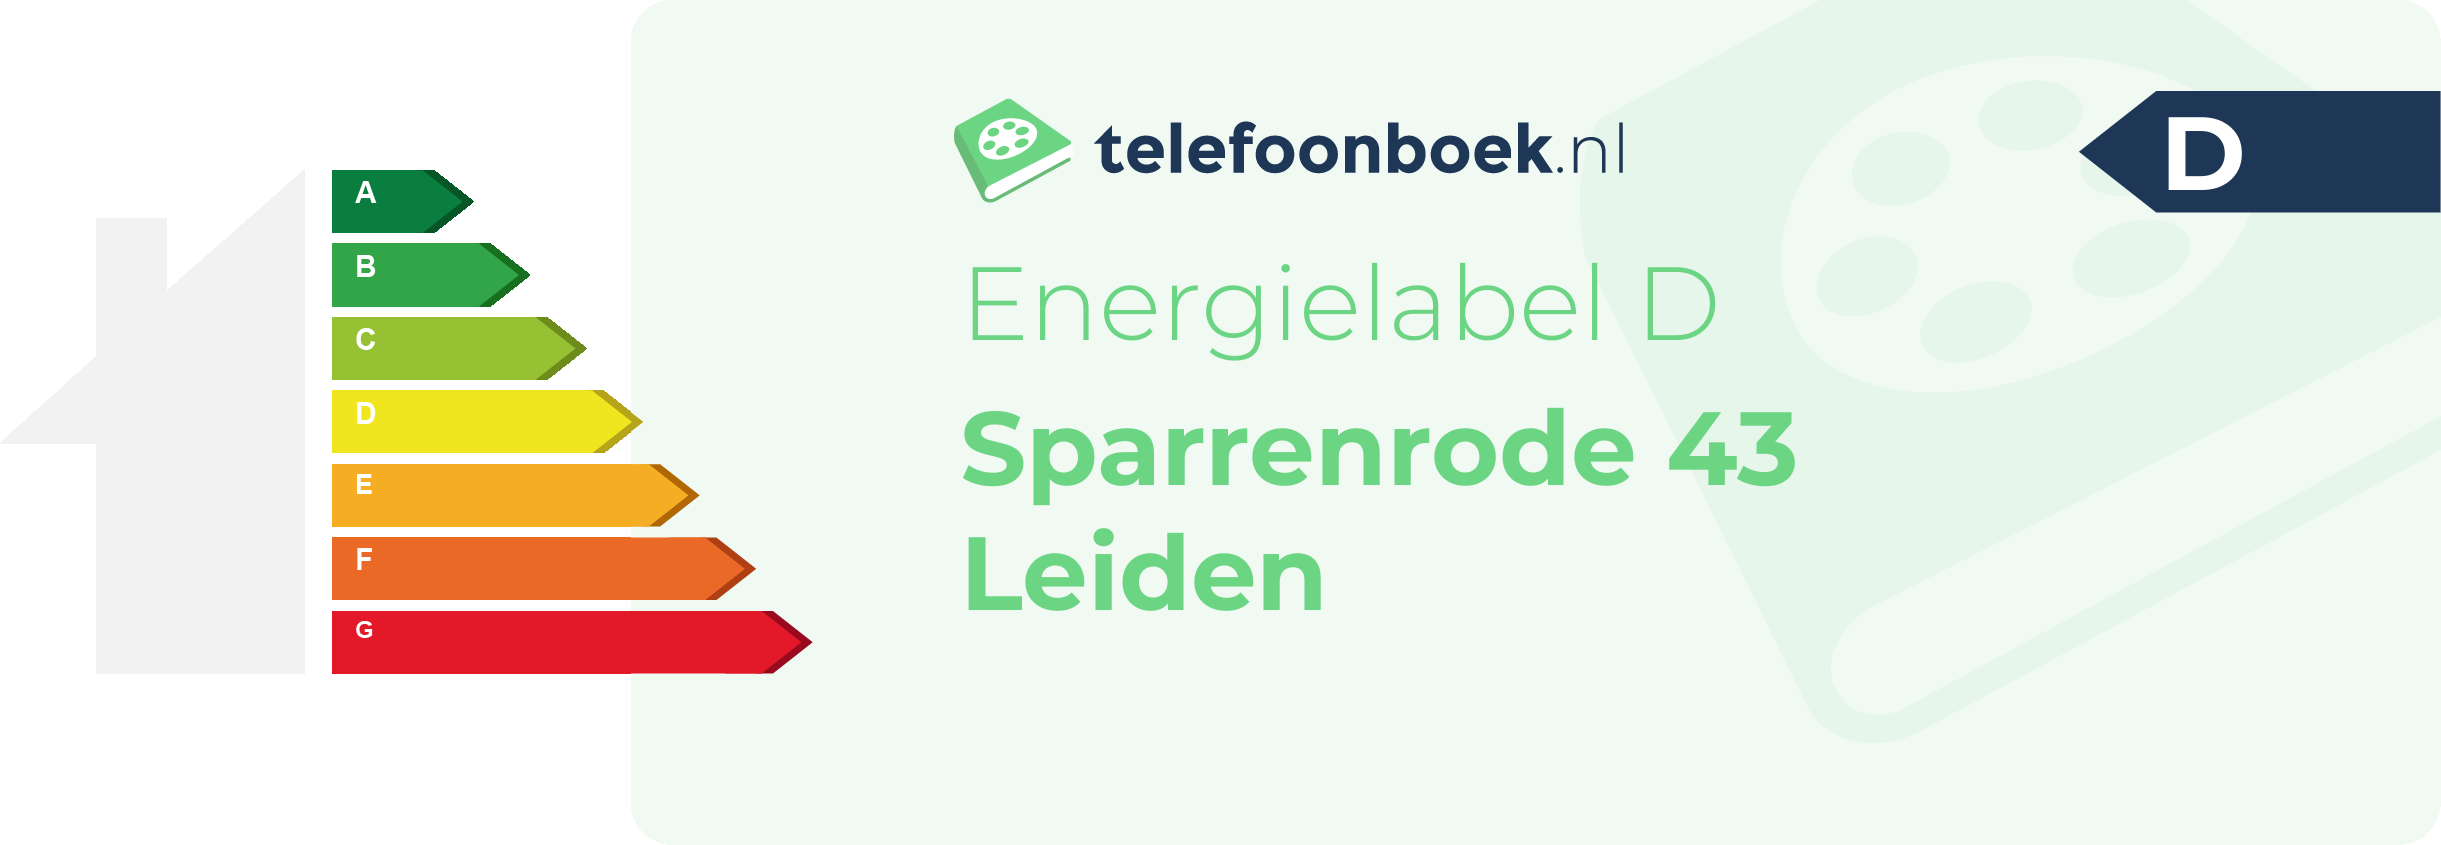 Energielabel Sparrenrode 43 Leiden